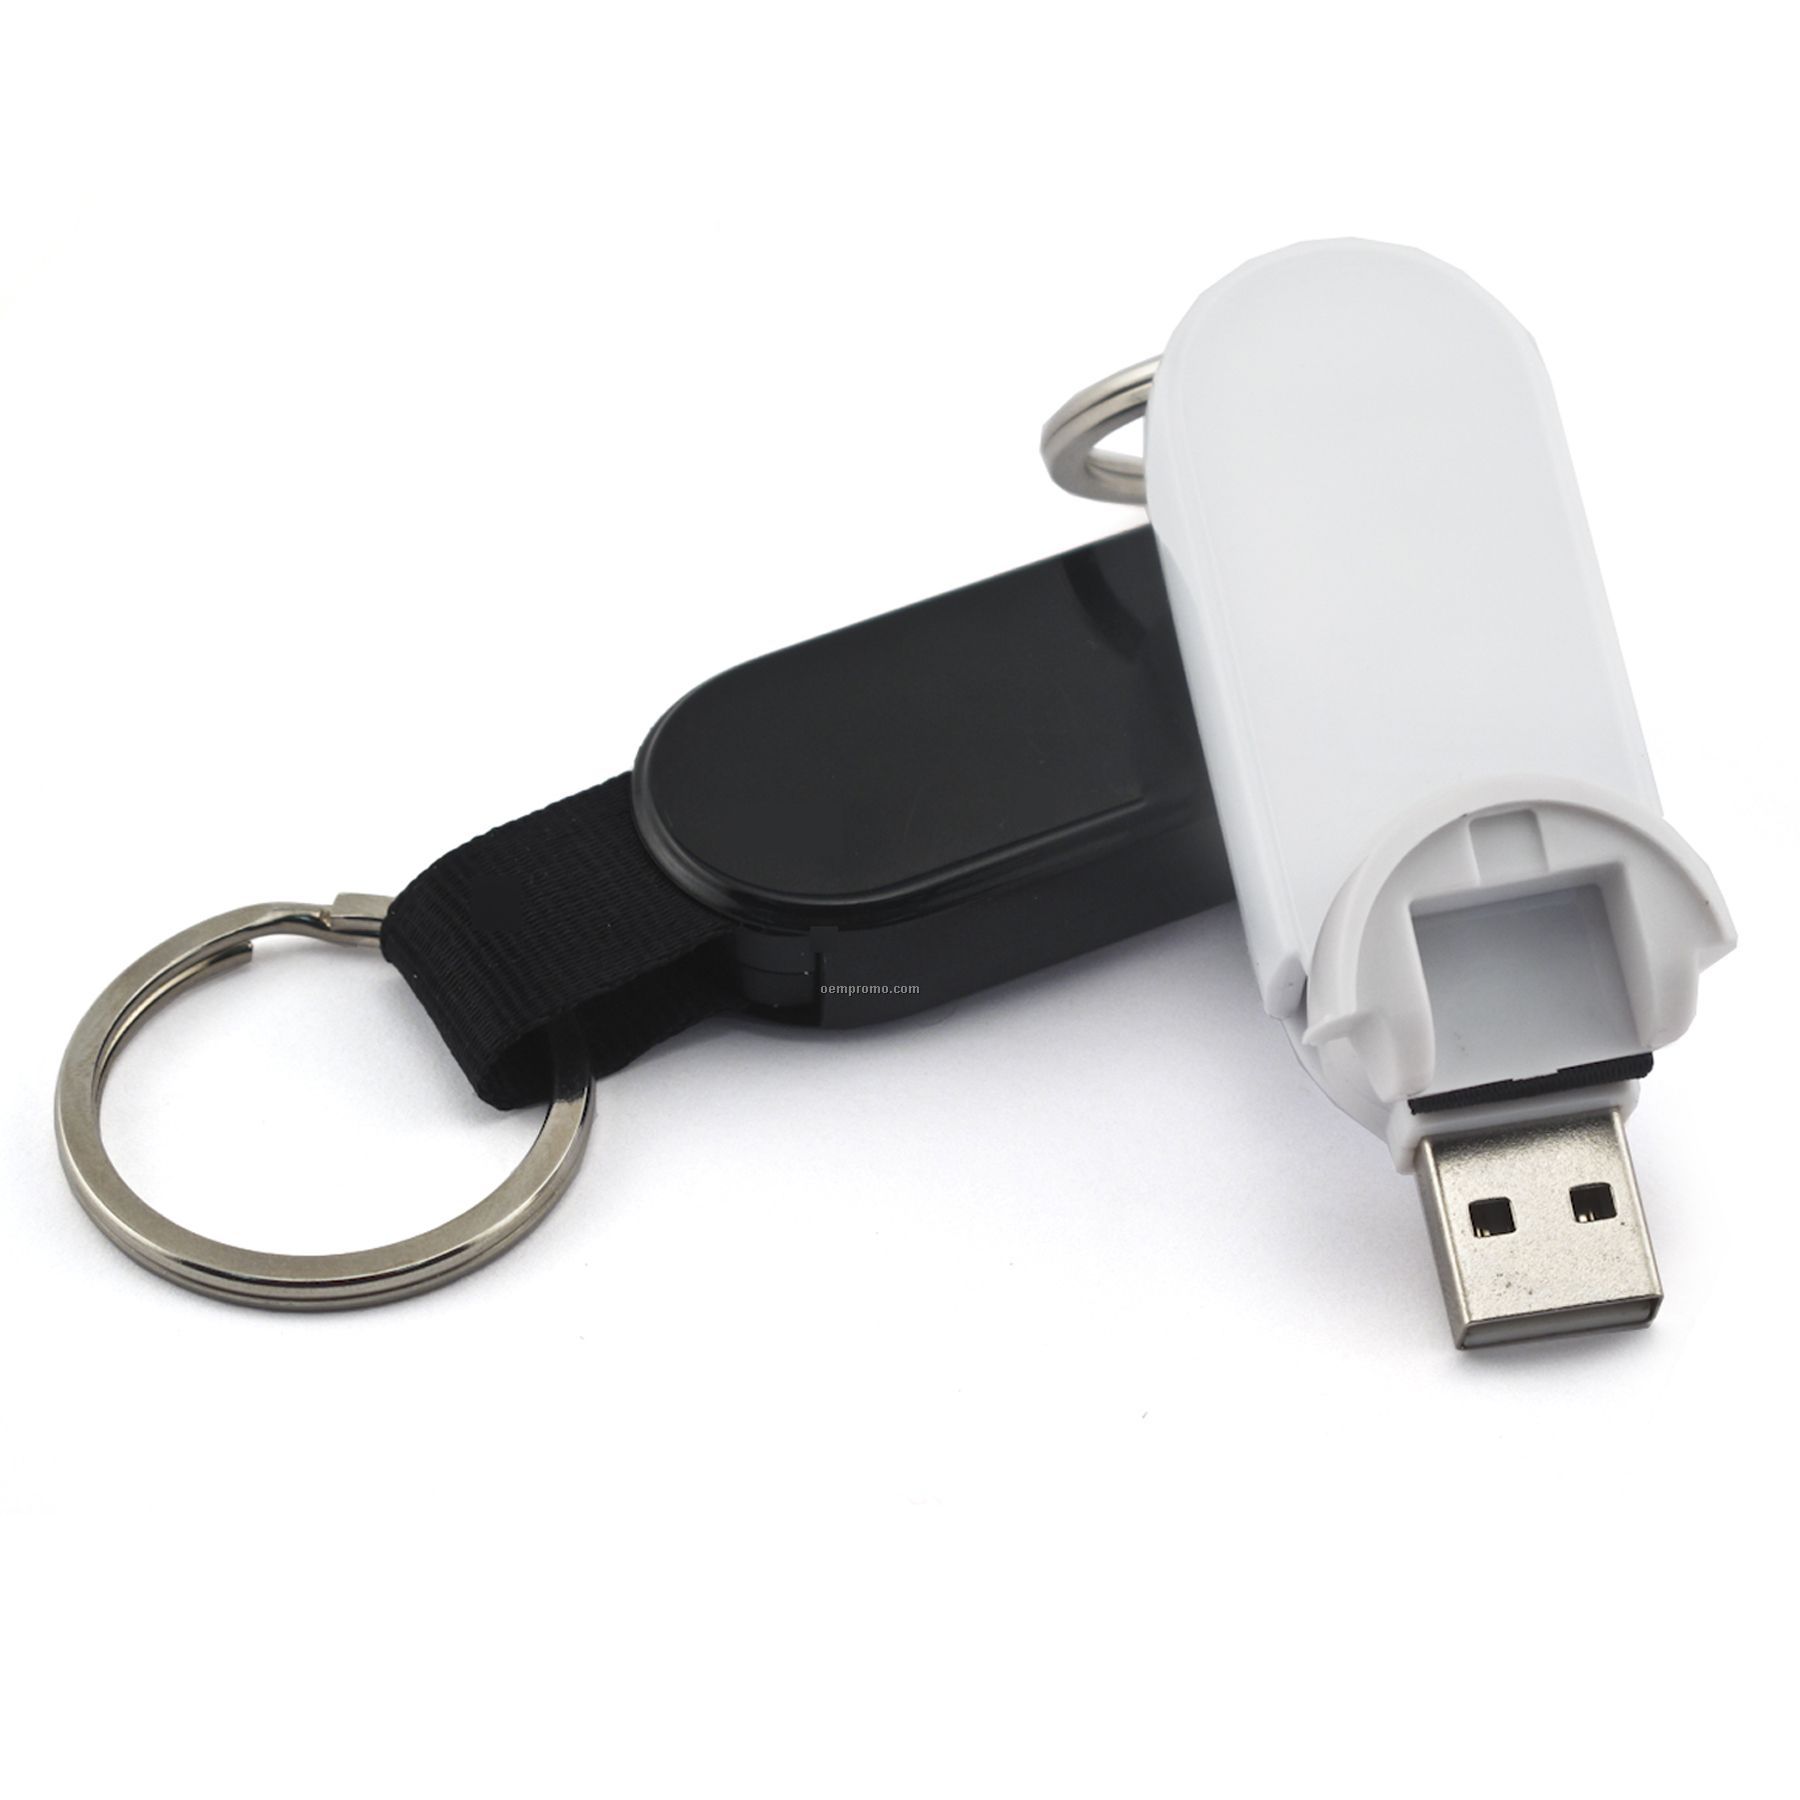 4 Gb Retractable USB Drive 700 Series